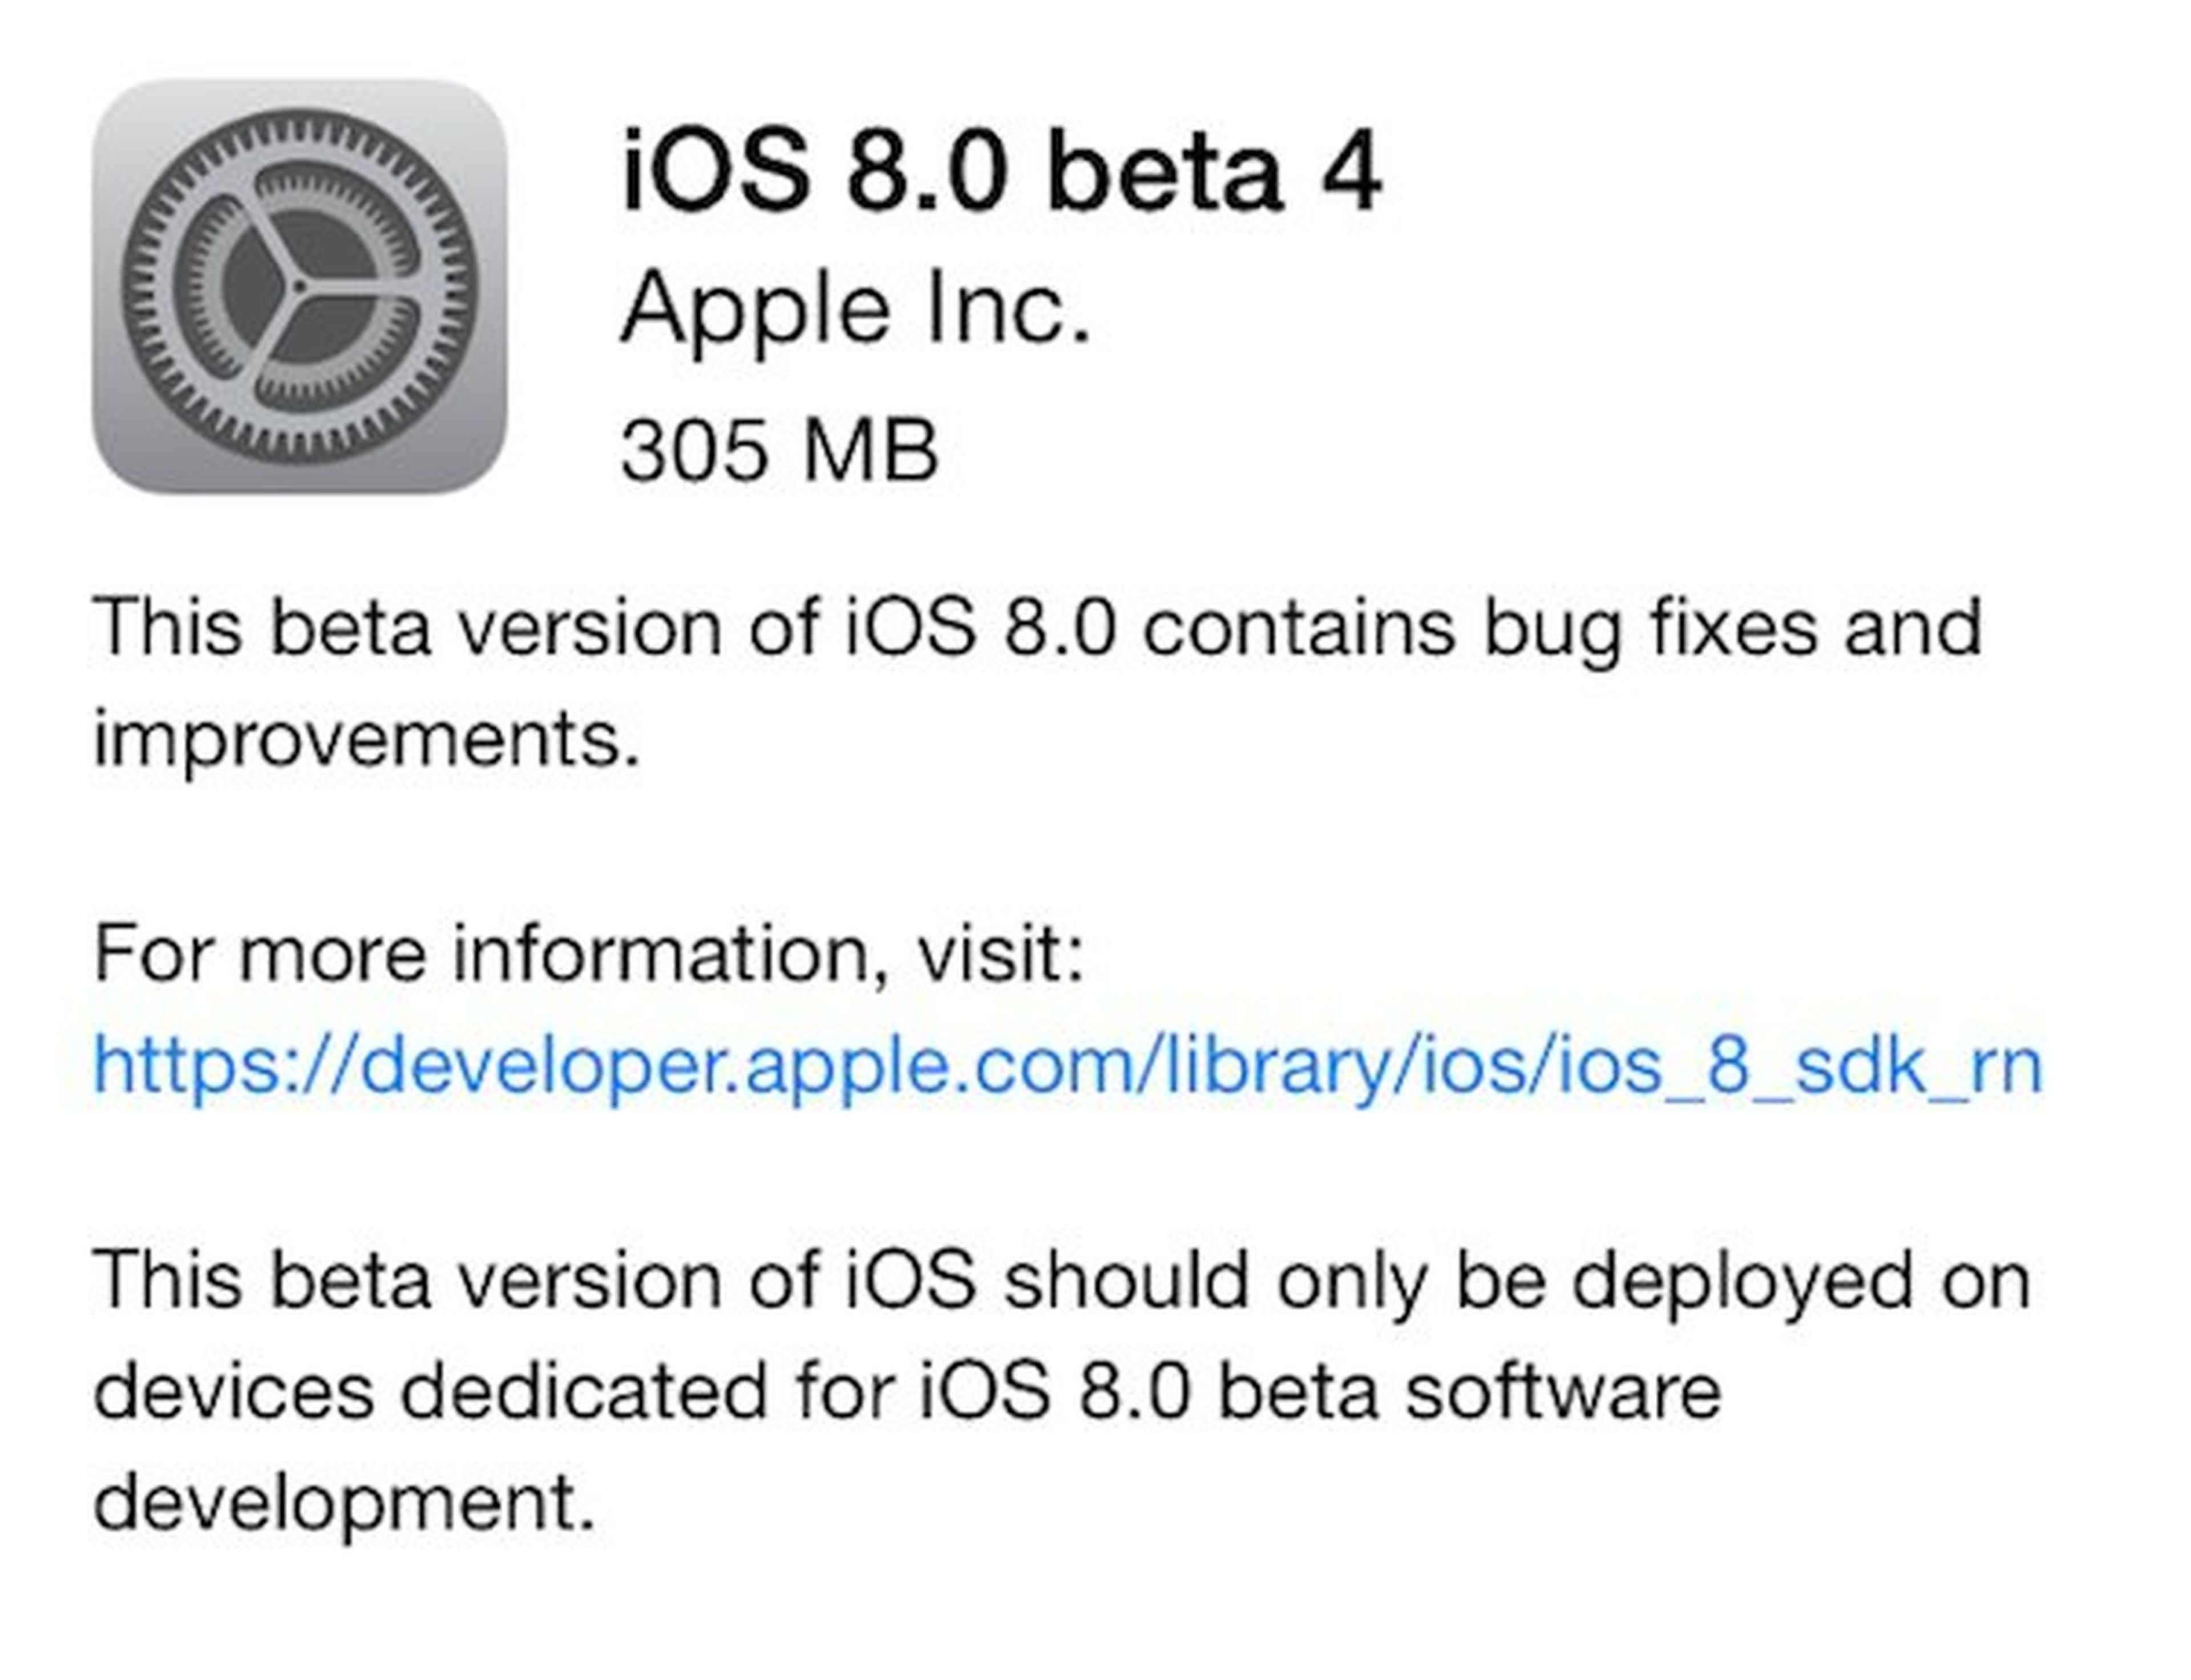 Nueva beta para iOS 8 ya disponible